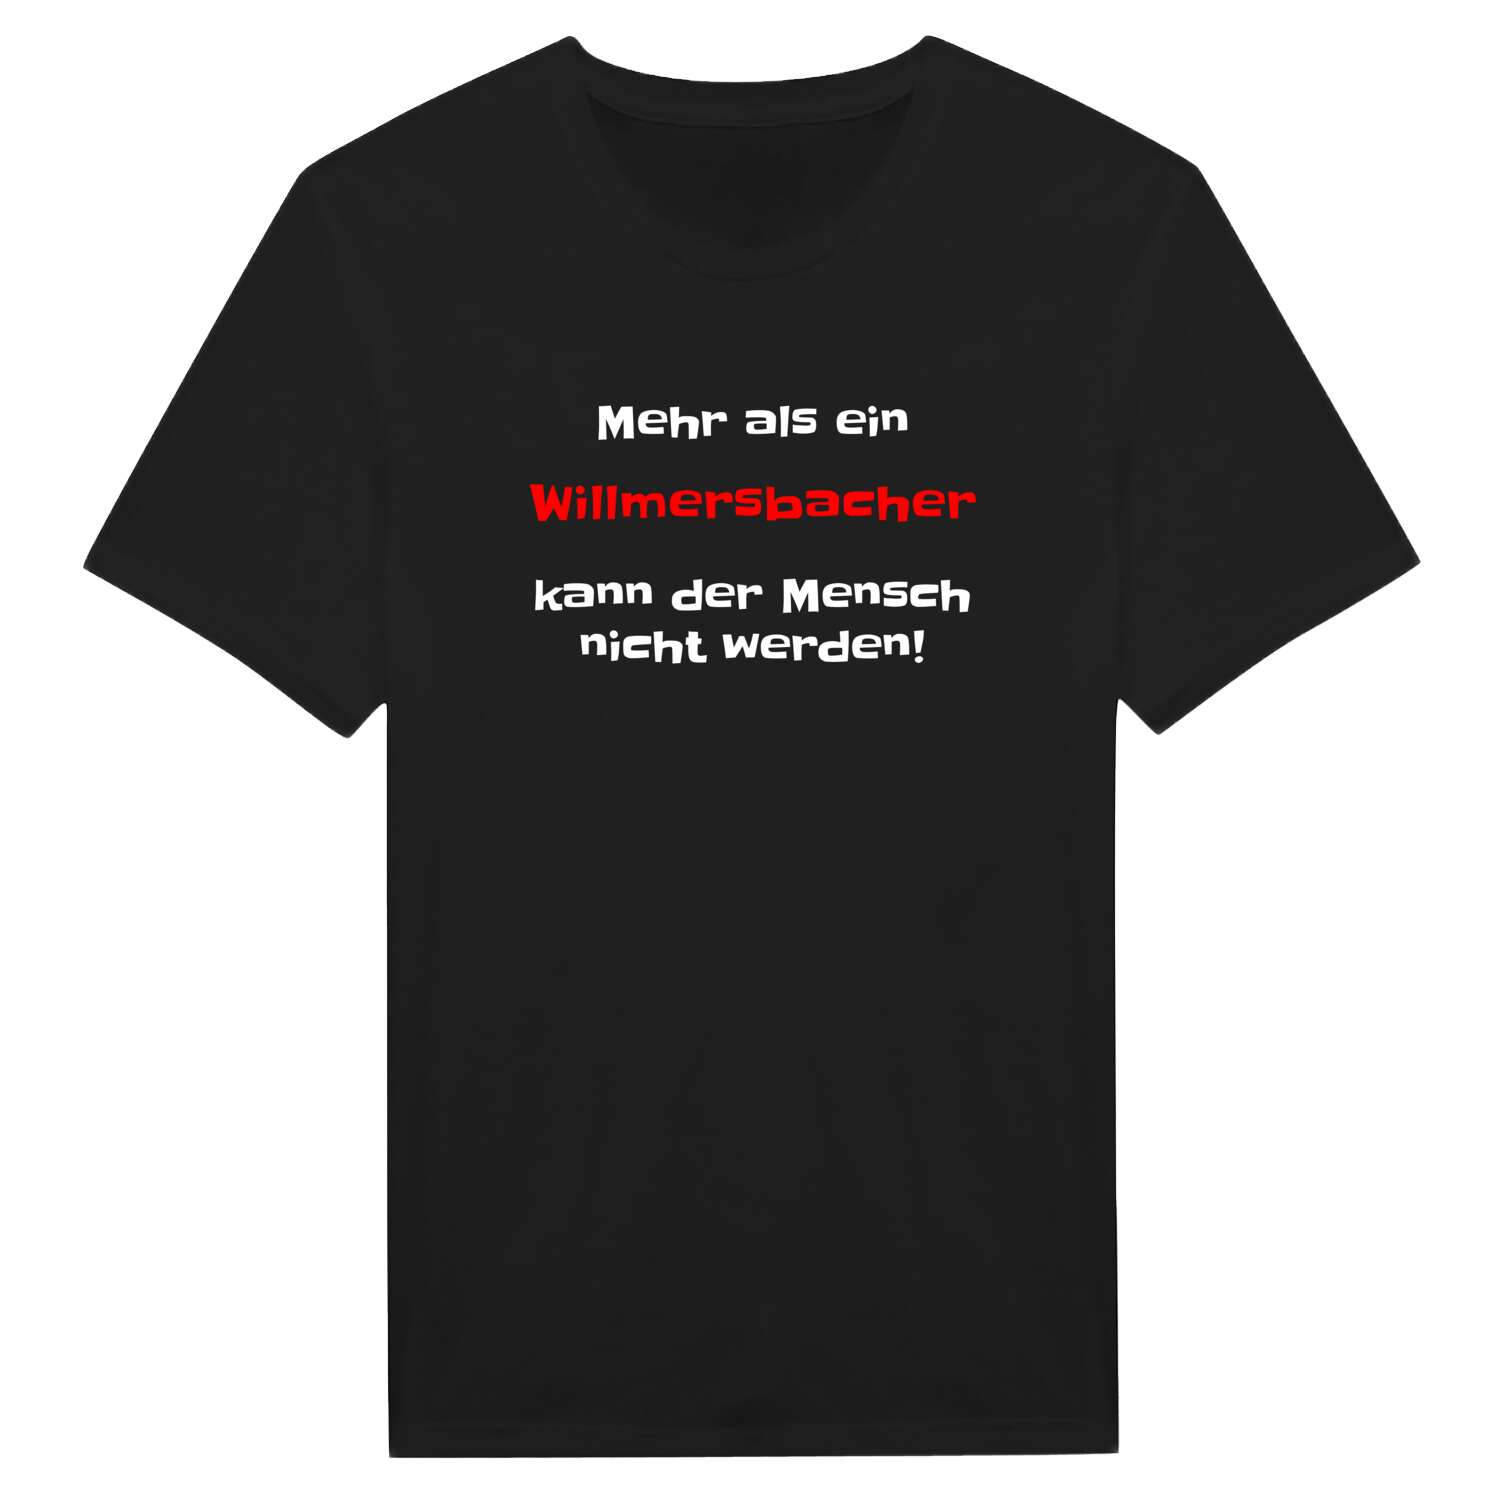 Willmersbach T-Shirt »Mehr als ein«